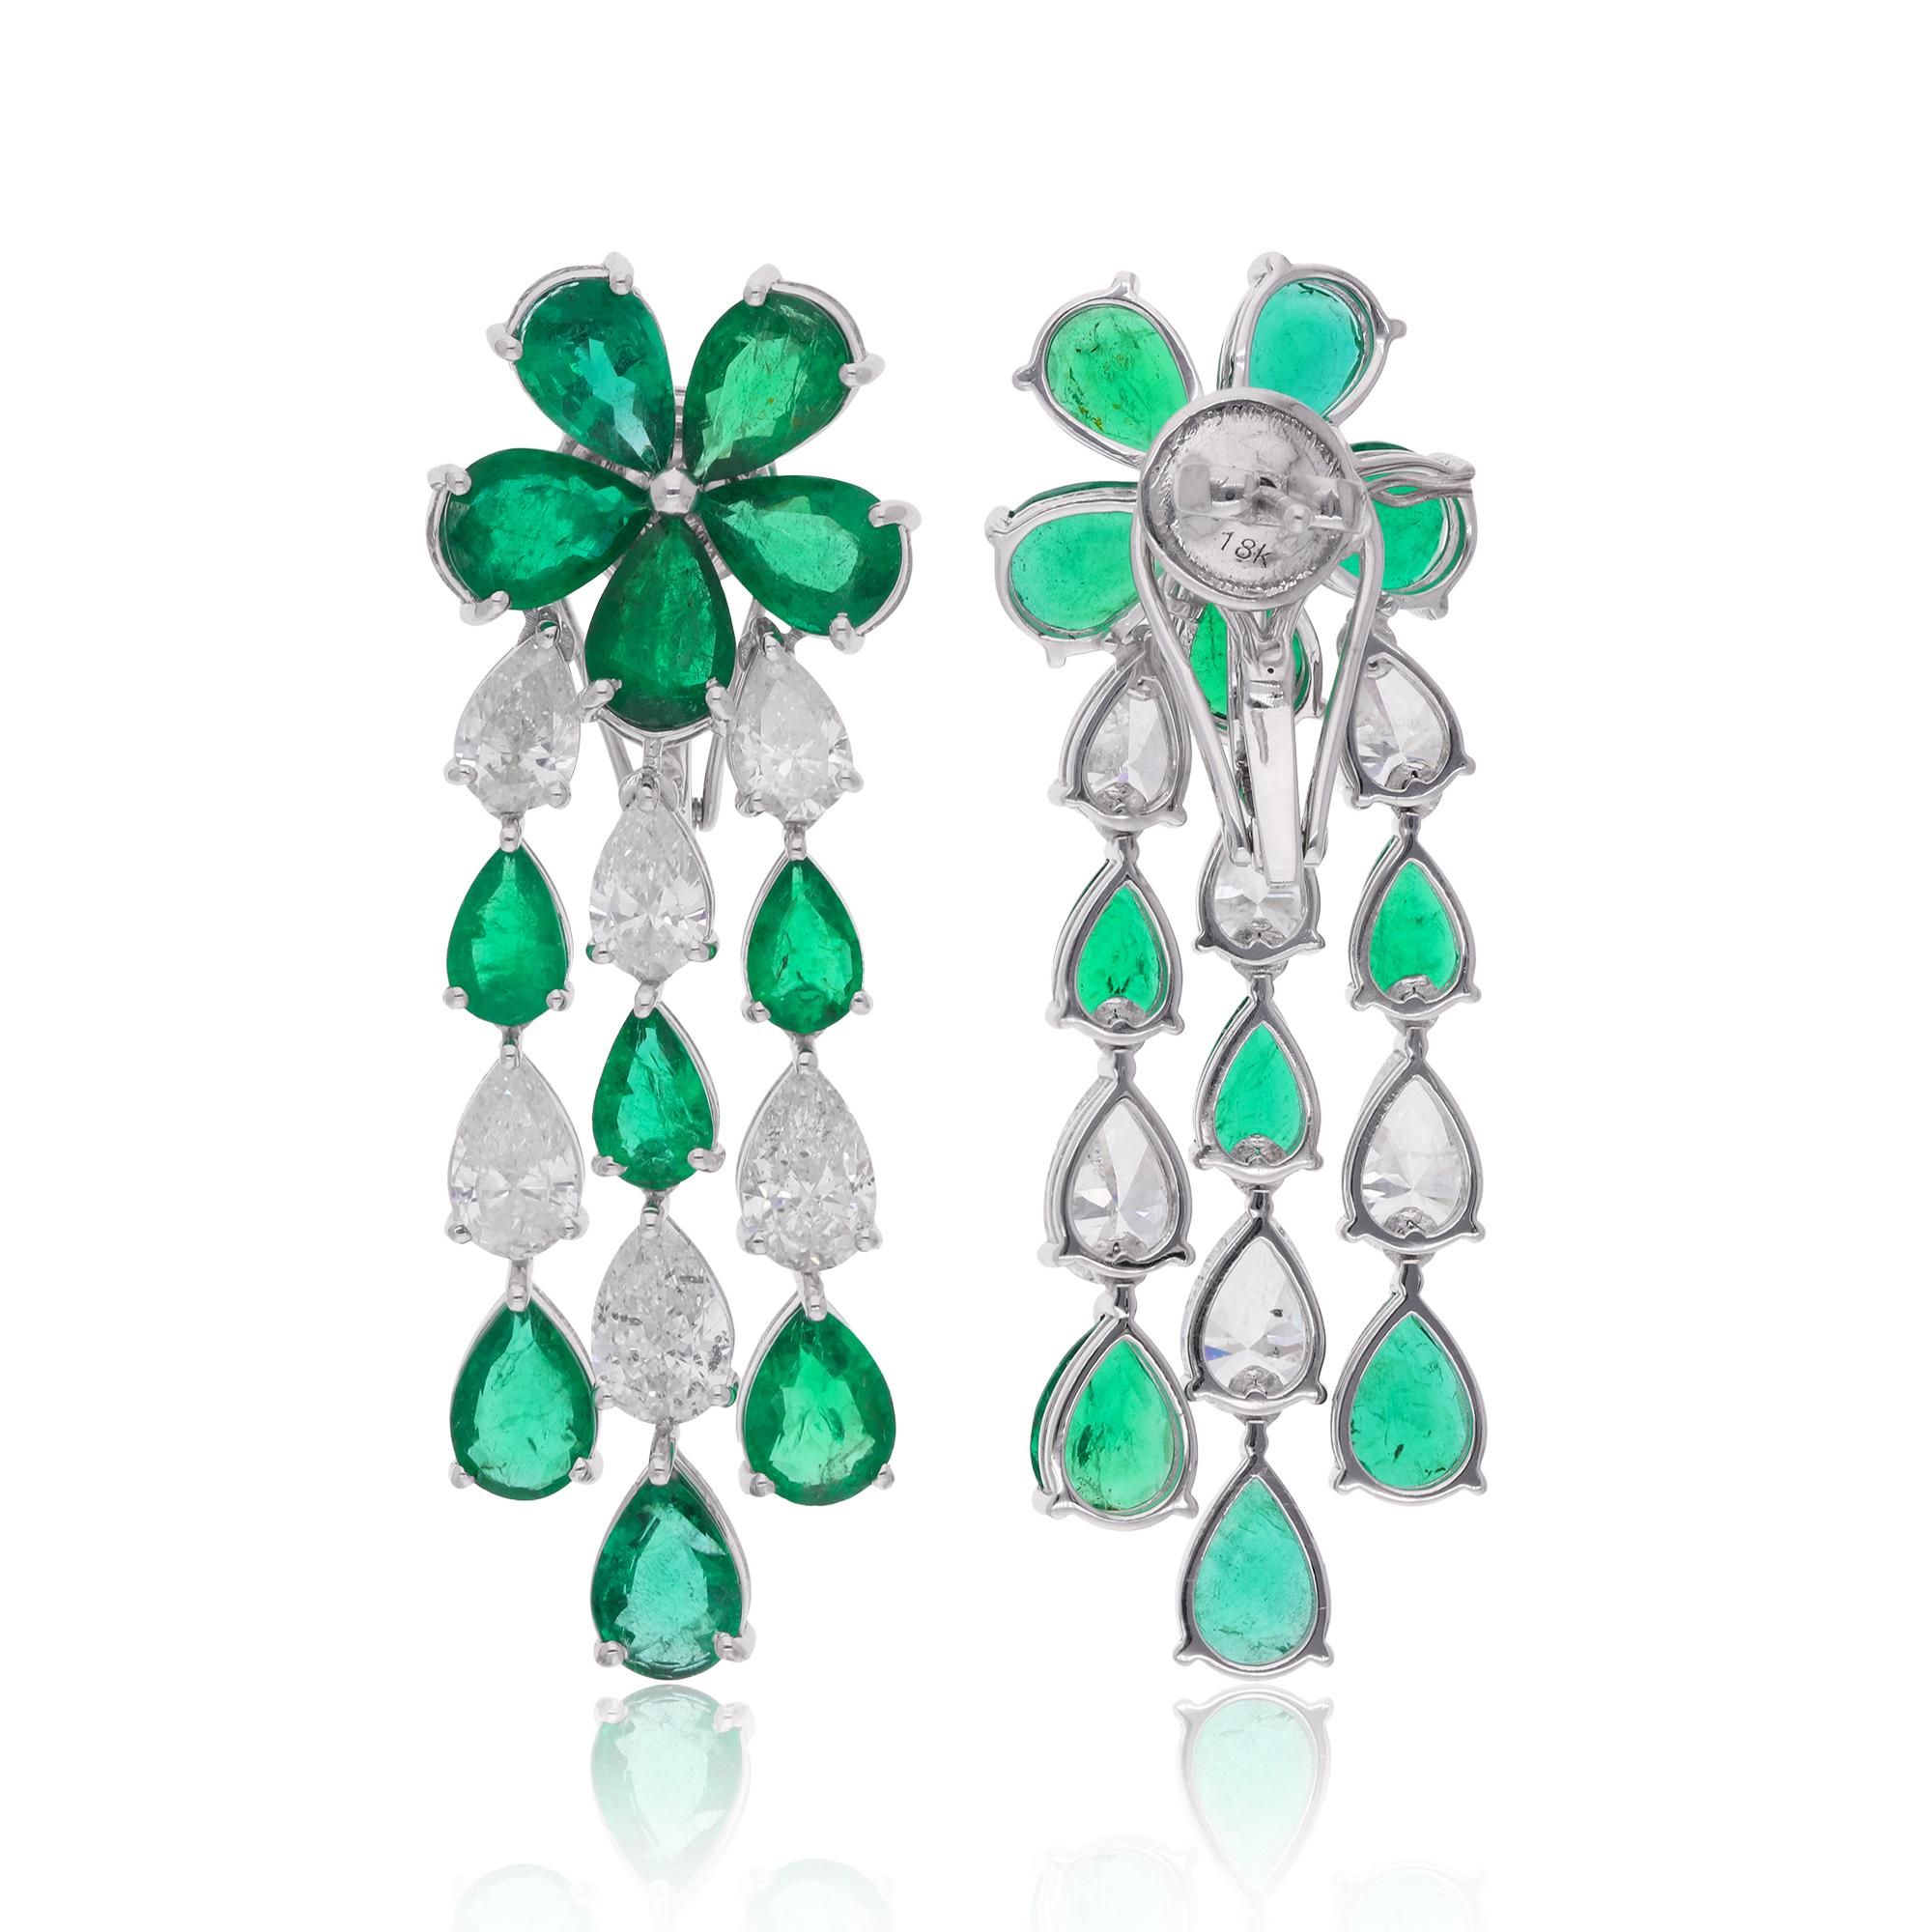 Erhöhen Sie Ihren Stil mit der faszinierenden Eleganz dieser Ohrringe mit einem sambischen Smaragd als Kronleuchter, die mit funkelnden Diamanten verziert und fachmännisch in luxuriösem 18 Karat Weißgold gefertigt sind. Diese exquisiten Ohrringe